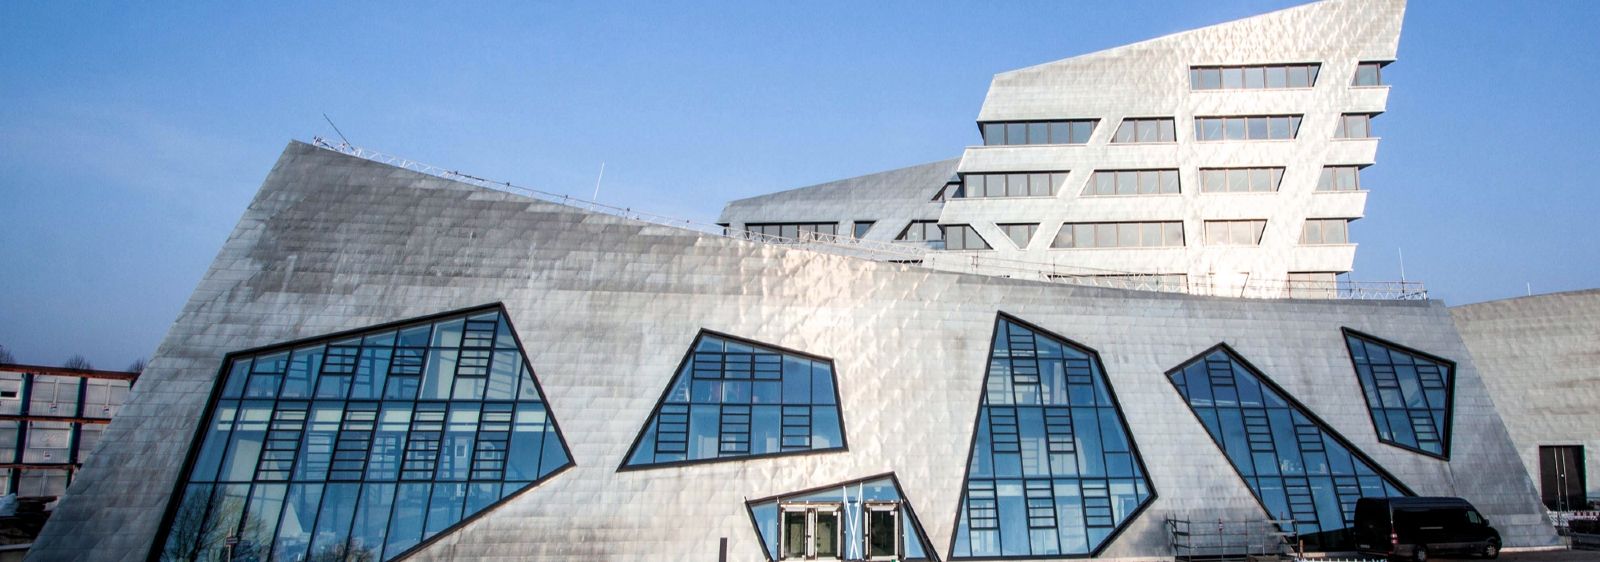 Das neue Zentralgebäude der Leuphana Universität wurde vom Architekten Daniel Libeskind entworfen.